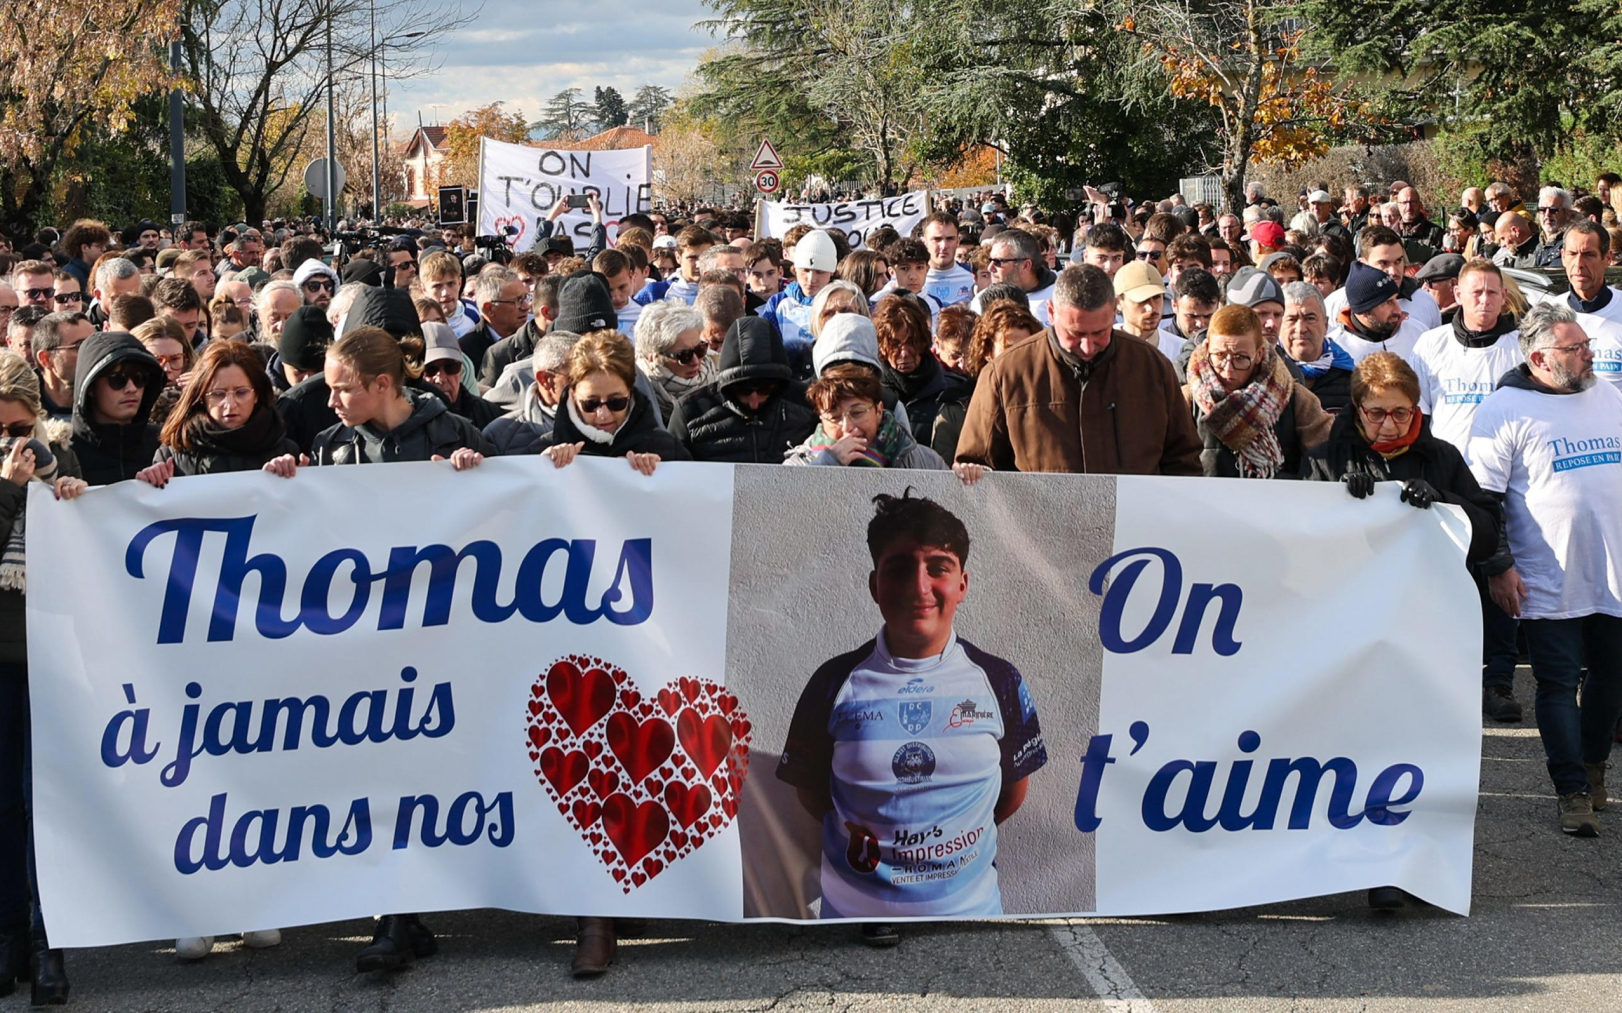 Le 22 novembre dernier, plusieurs milliers de personnes ont rendu hommage à Thomas Perotto dans les rues de Romans-sur-Isère (Drôme), tué à l’arme blanche dans la nuit du 18 au 19 novembre, à Crépol. PhotoPQR/Le Dauphiné/Fabrice Hebrard